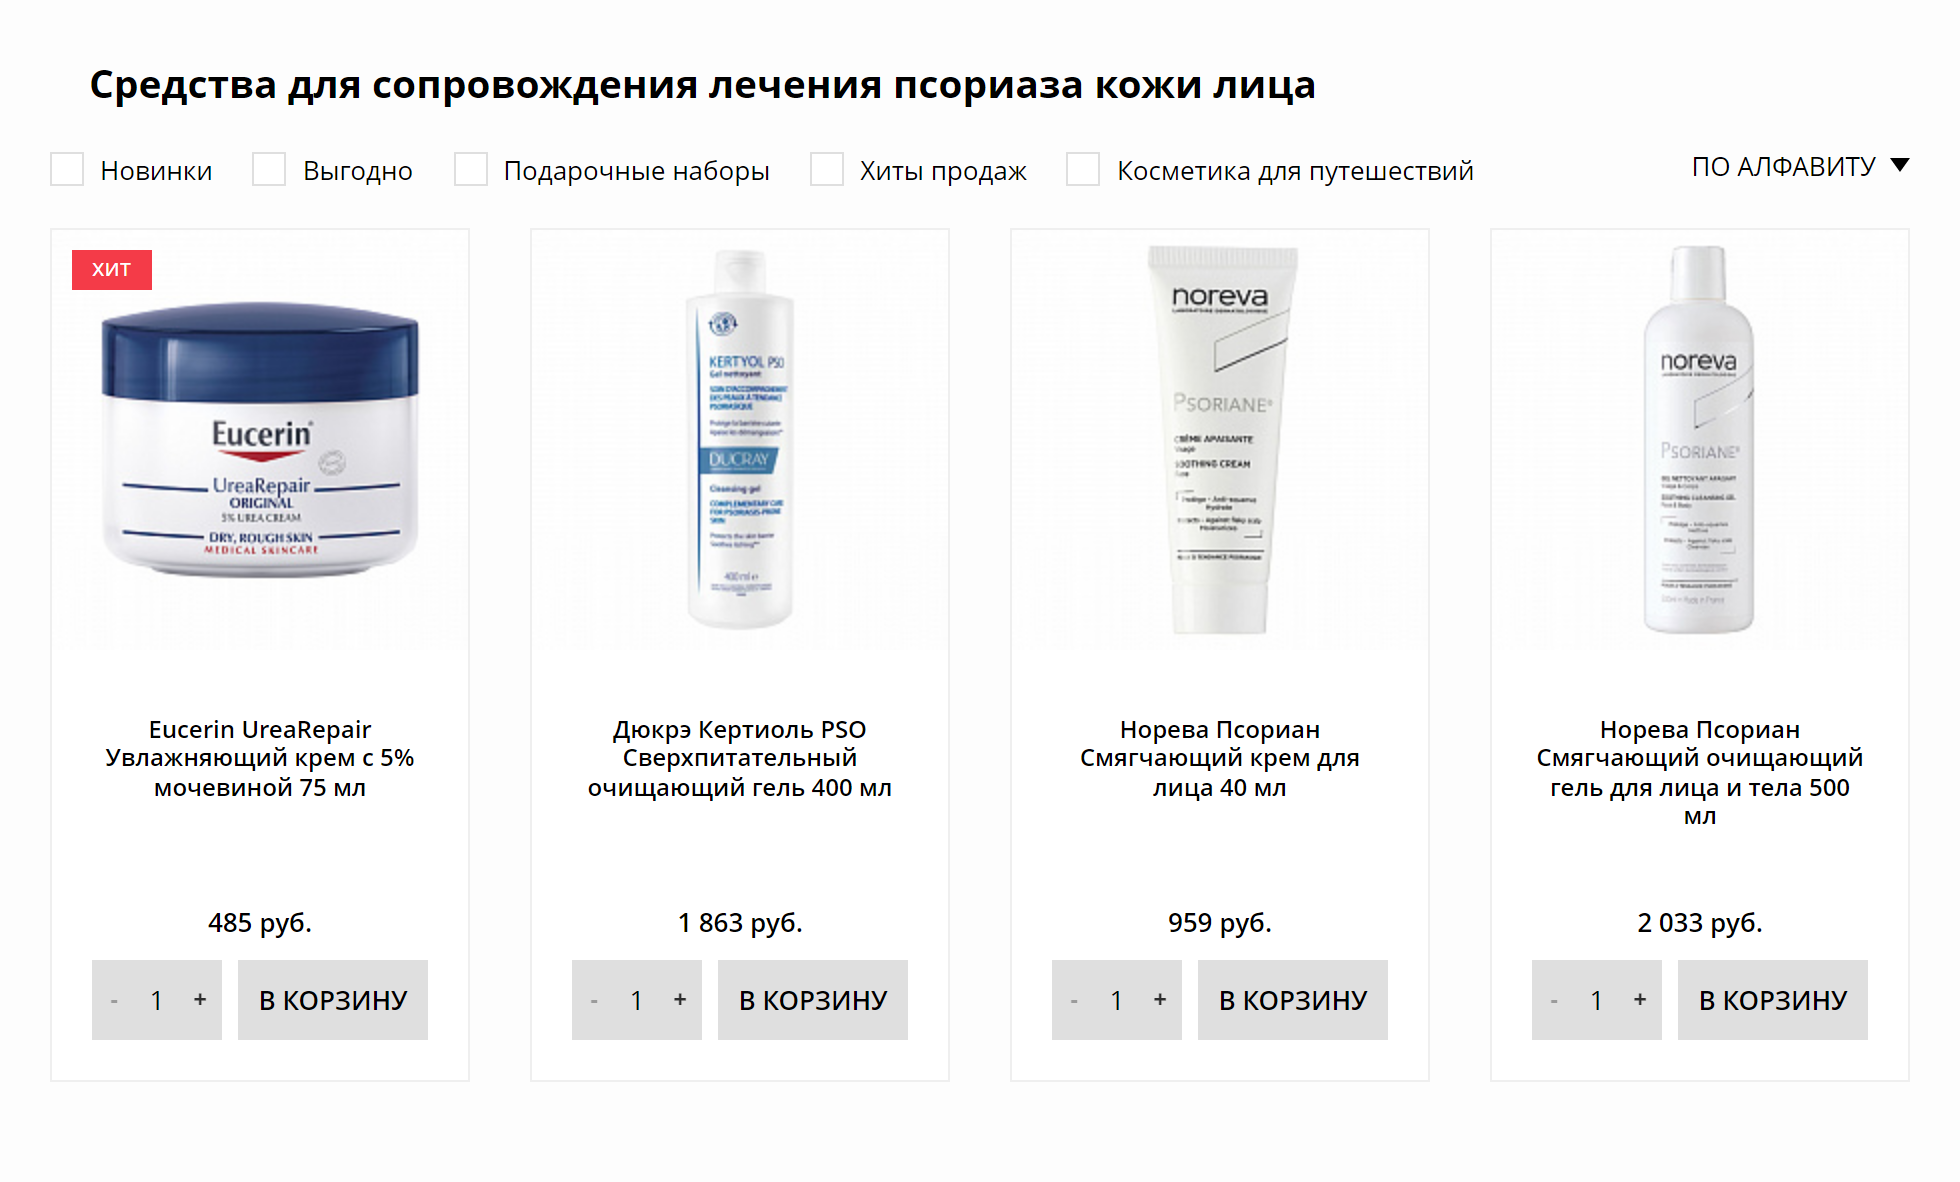 Некоторые производители аптечной косметики выпускают средства для людей с псориазом. Источник: frenchpharmacy.ru